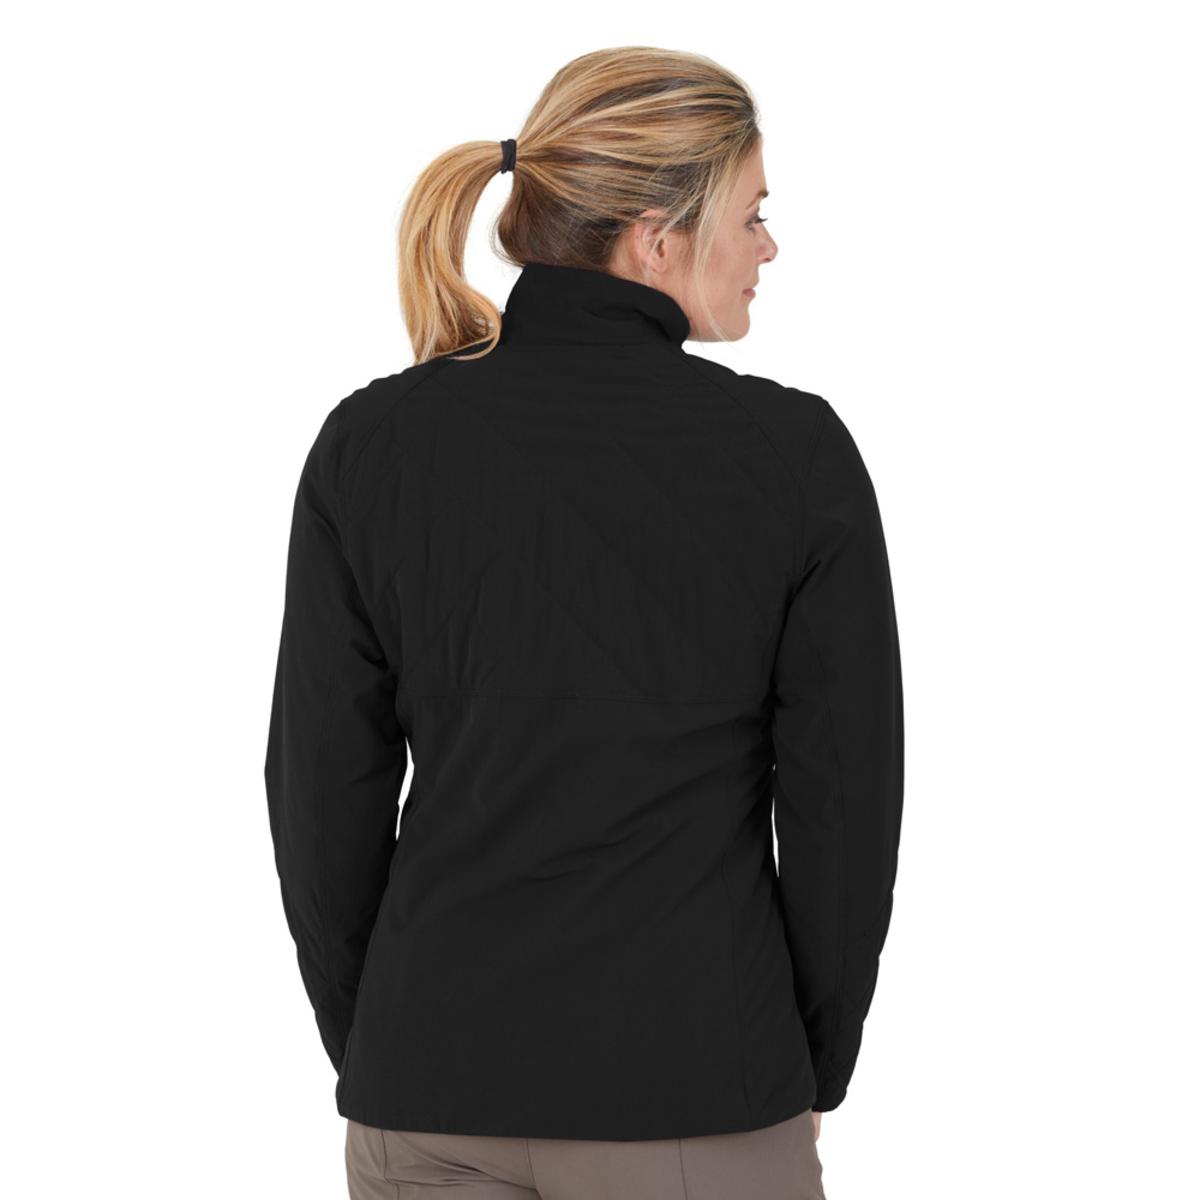 Outdoor Research Women's Winter Ferrosi Jacket